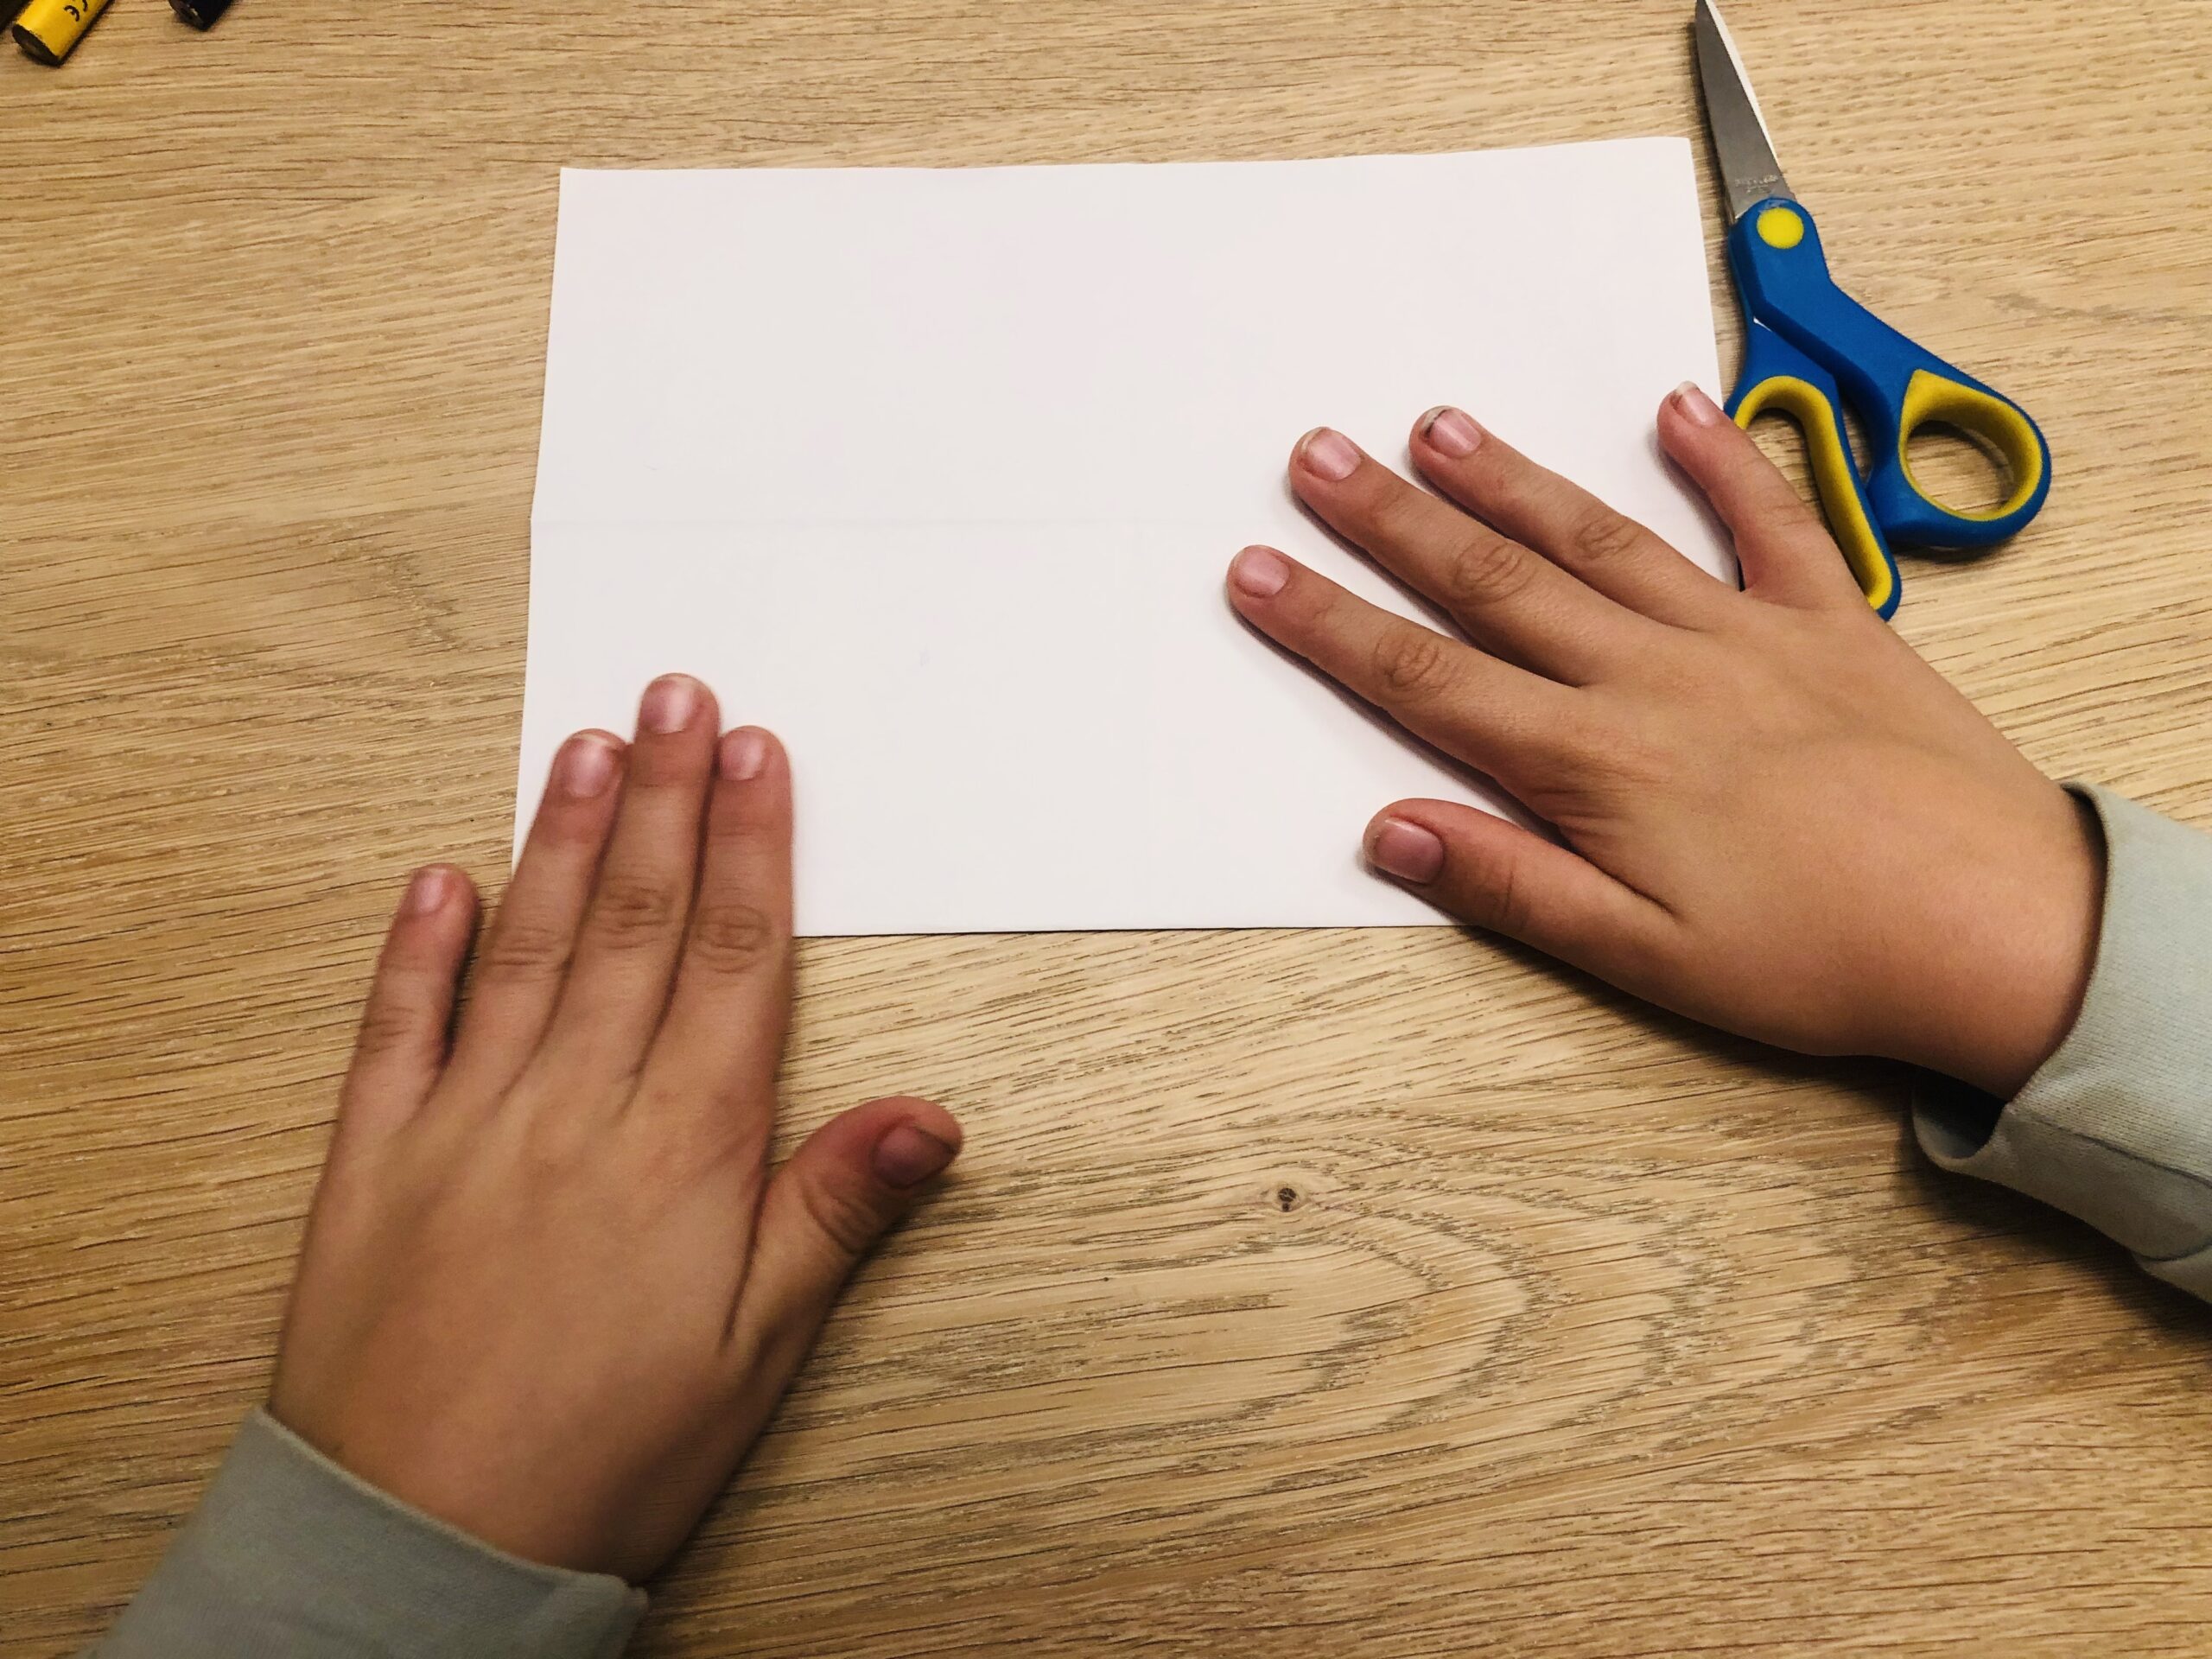 Bild zum Schritt 12 für das Bastel- und DIY-Abenteuer für Kinder: 'Jetzt faltet ihr das Papier wieder ganz auf und legt...'